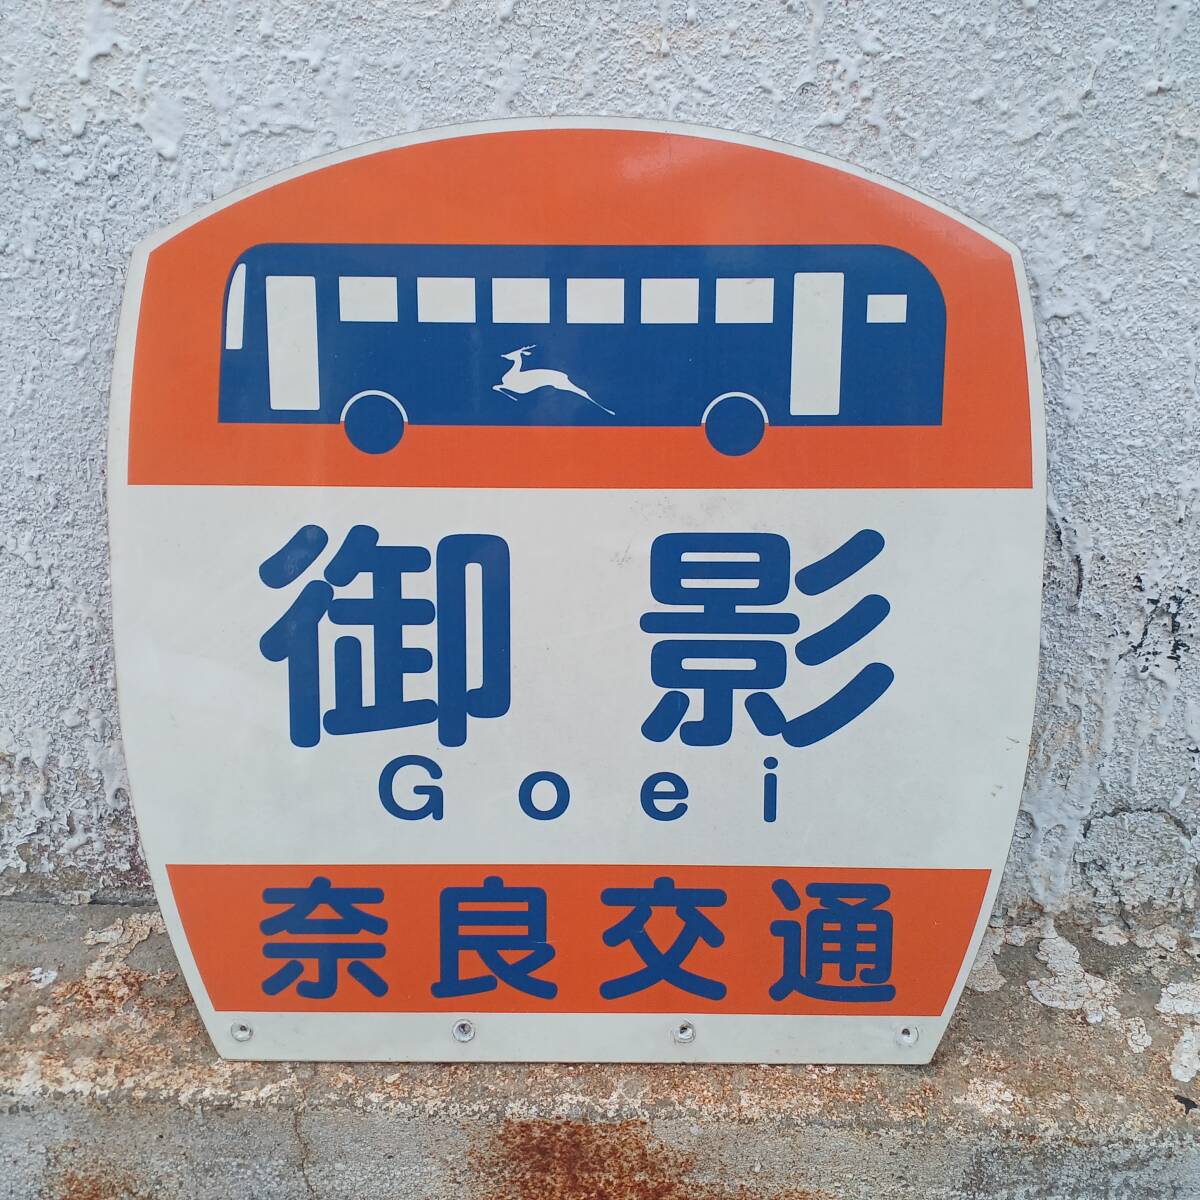 奈良交通 御影 バス停板 (長期間受取出来ない方は入札しないでください)の画像2